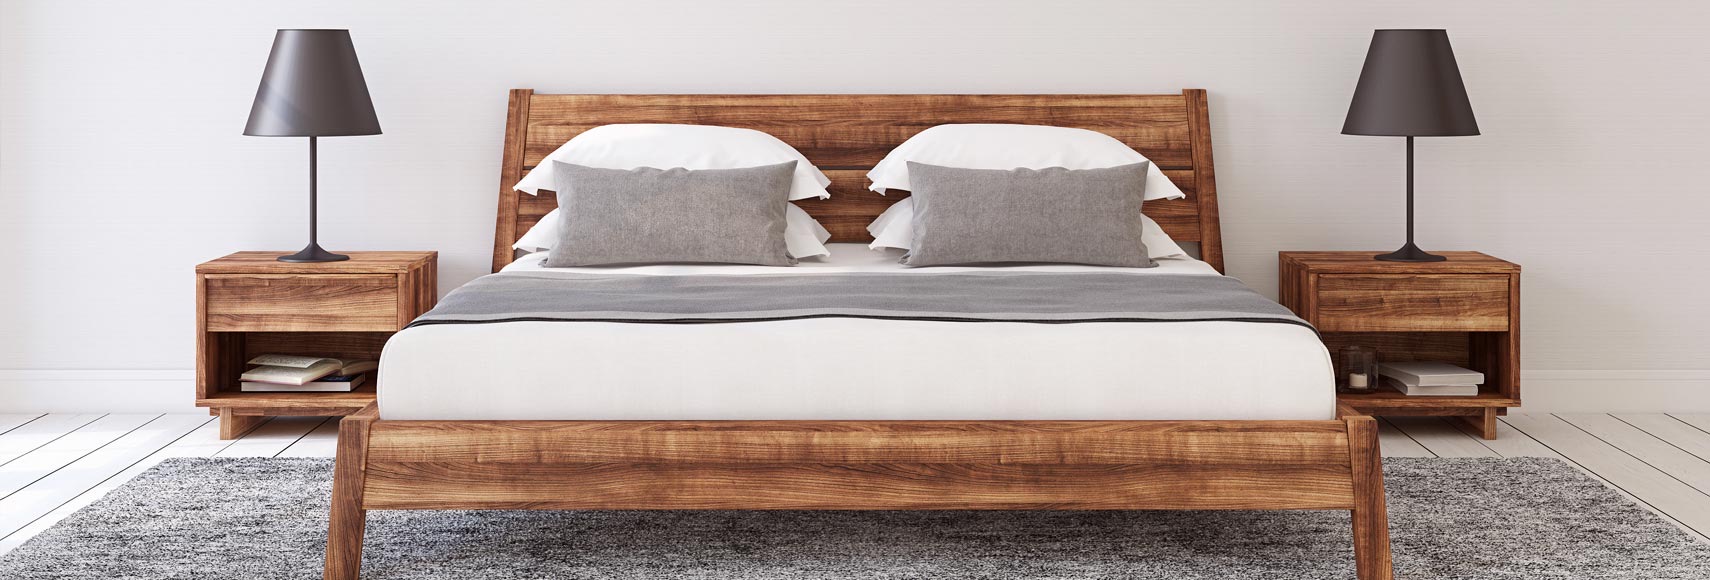 houten bed kopen online